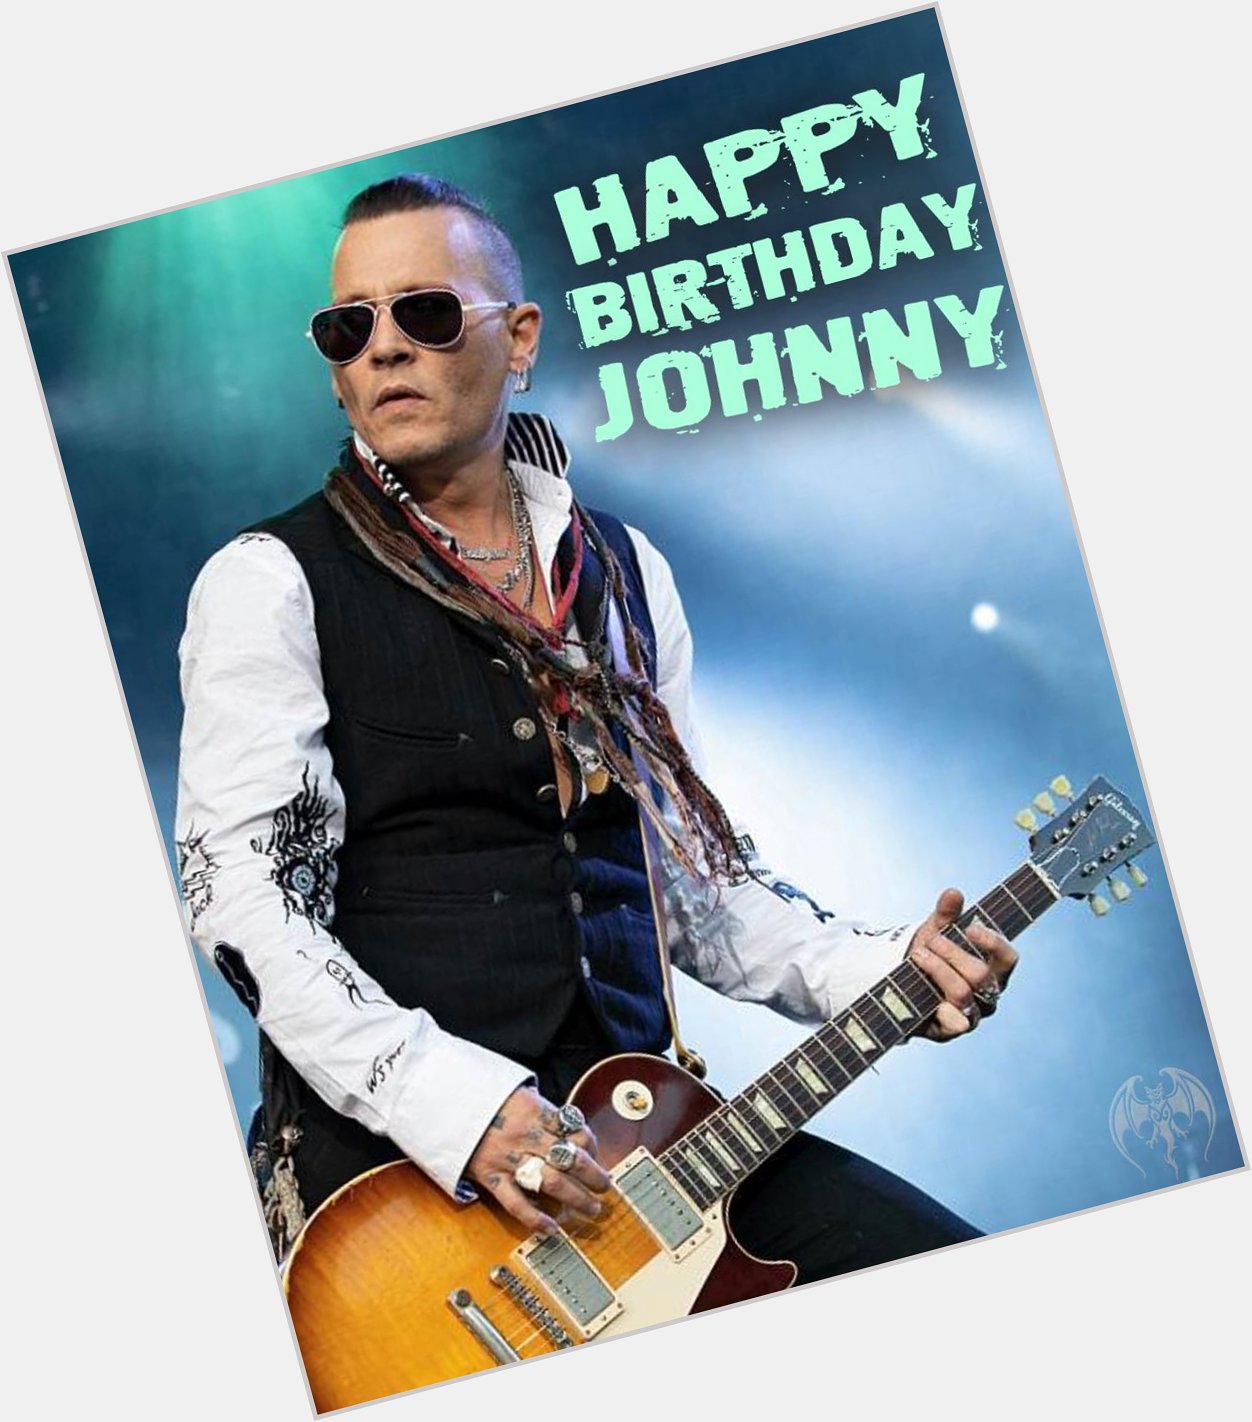 Wishing my friend Johnny Depp a very happy birthday today! 